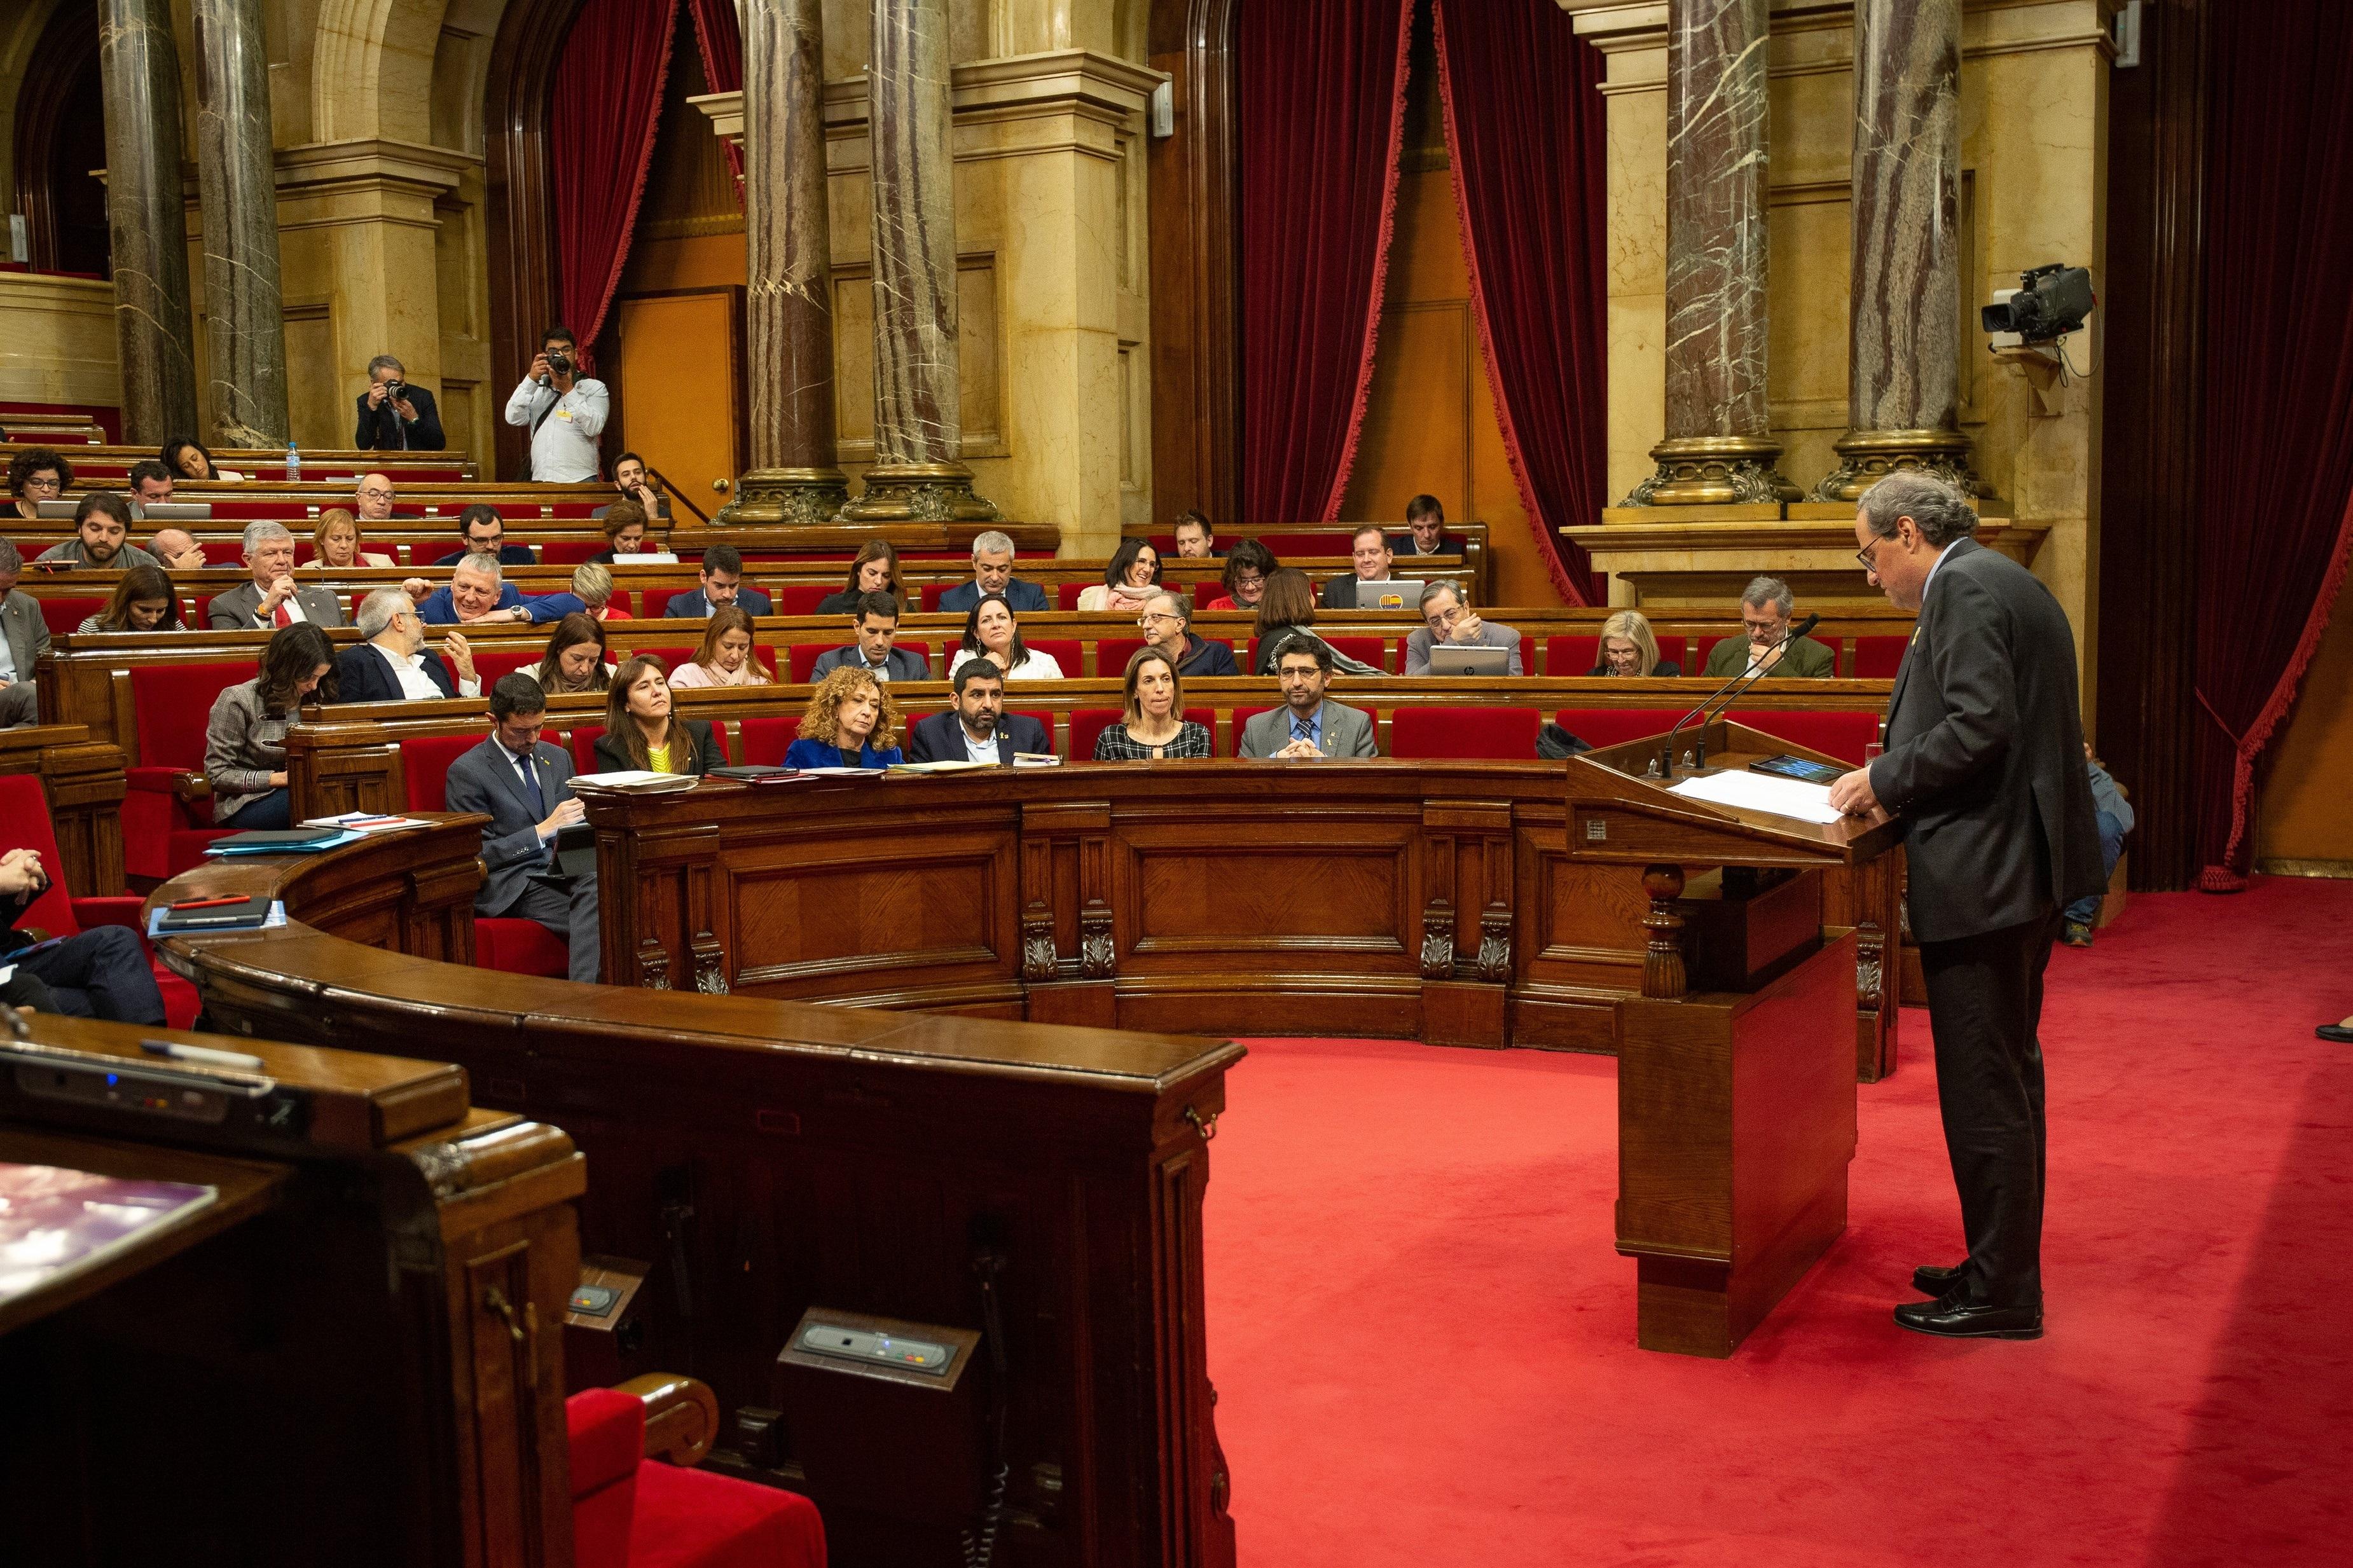 El Presidente de la Generalitat, Quim Torra, en el un pleno en el Parlamento de Cataluña - David Zorrakino Europa Press